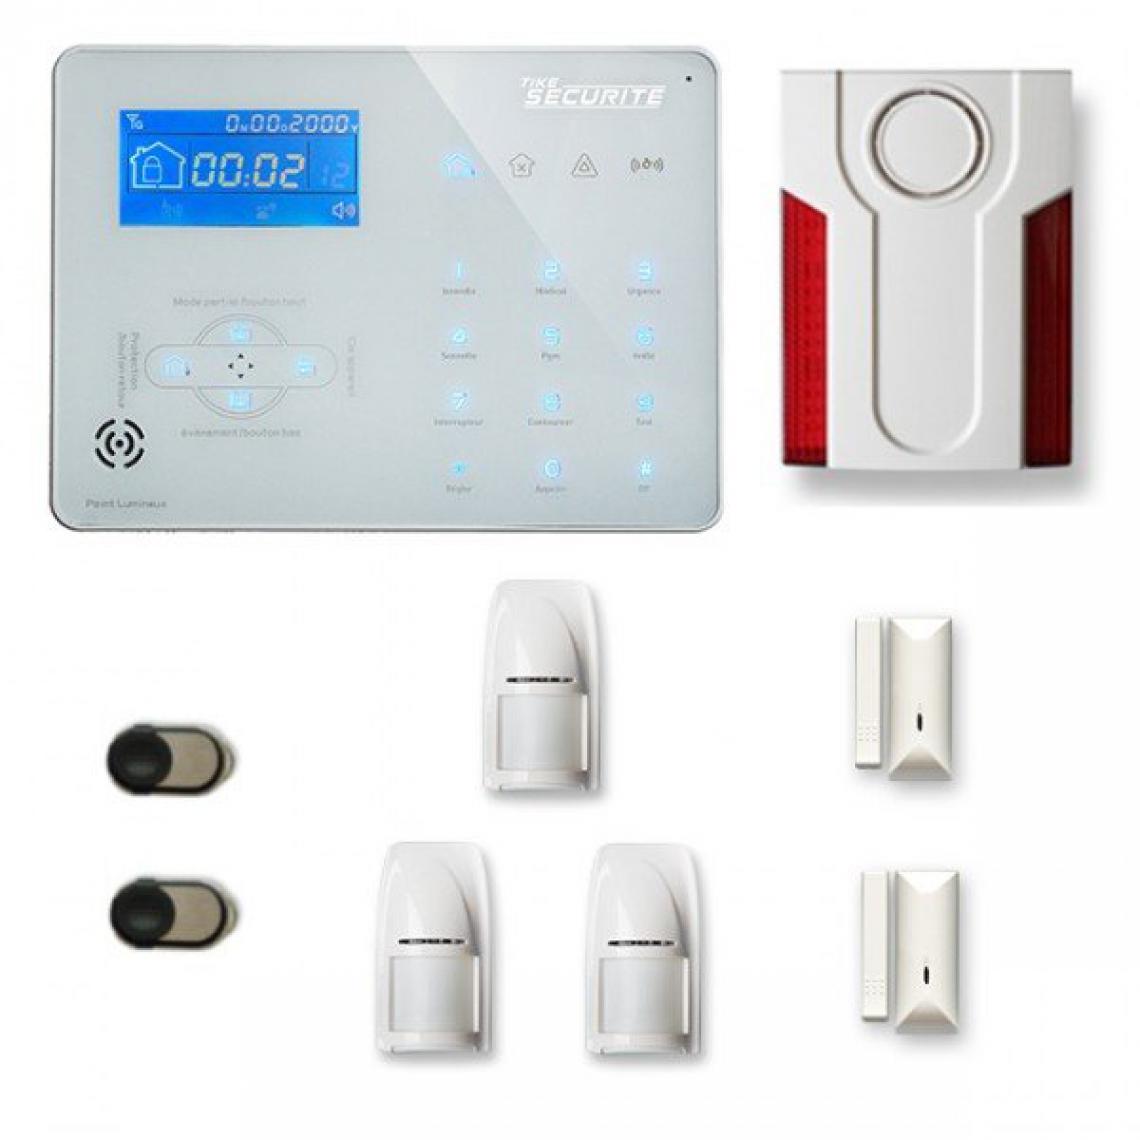 Tike Securite - Alarme maison sans fil ICE-B27 Compatible Box internet et GSM - Alarme connectée